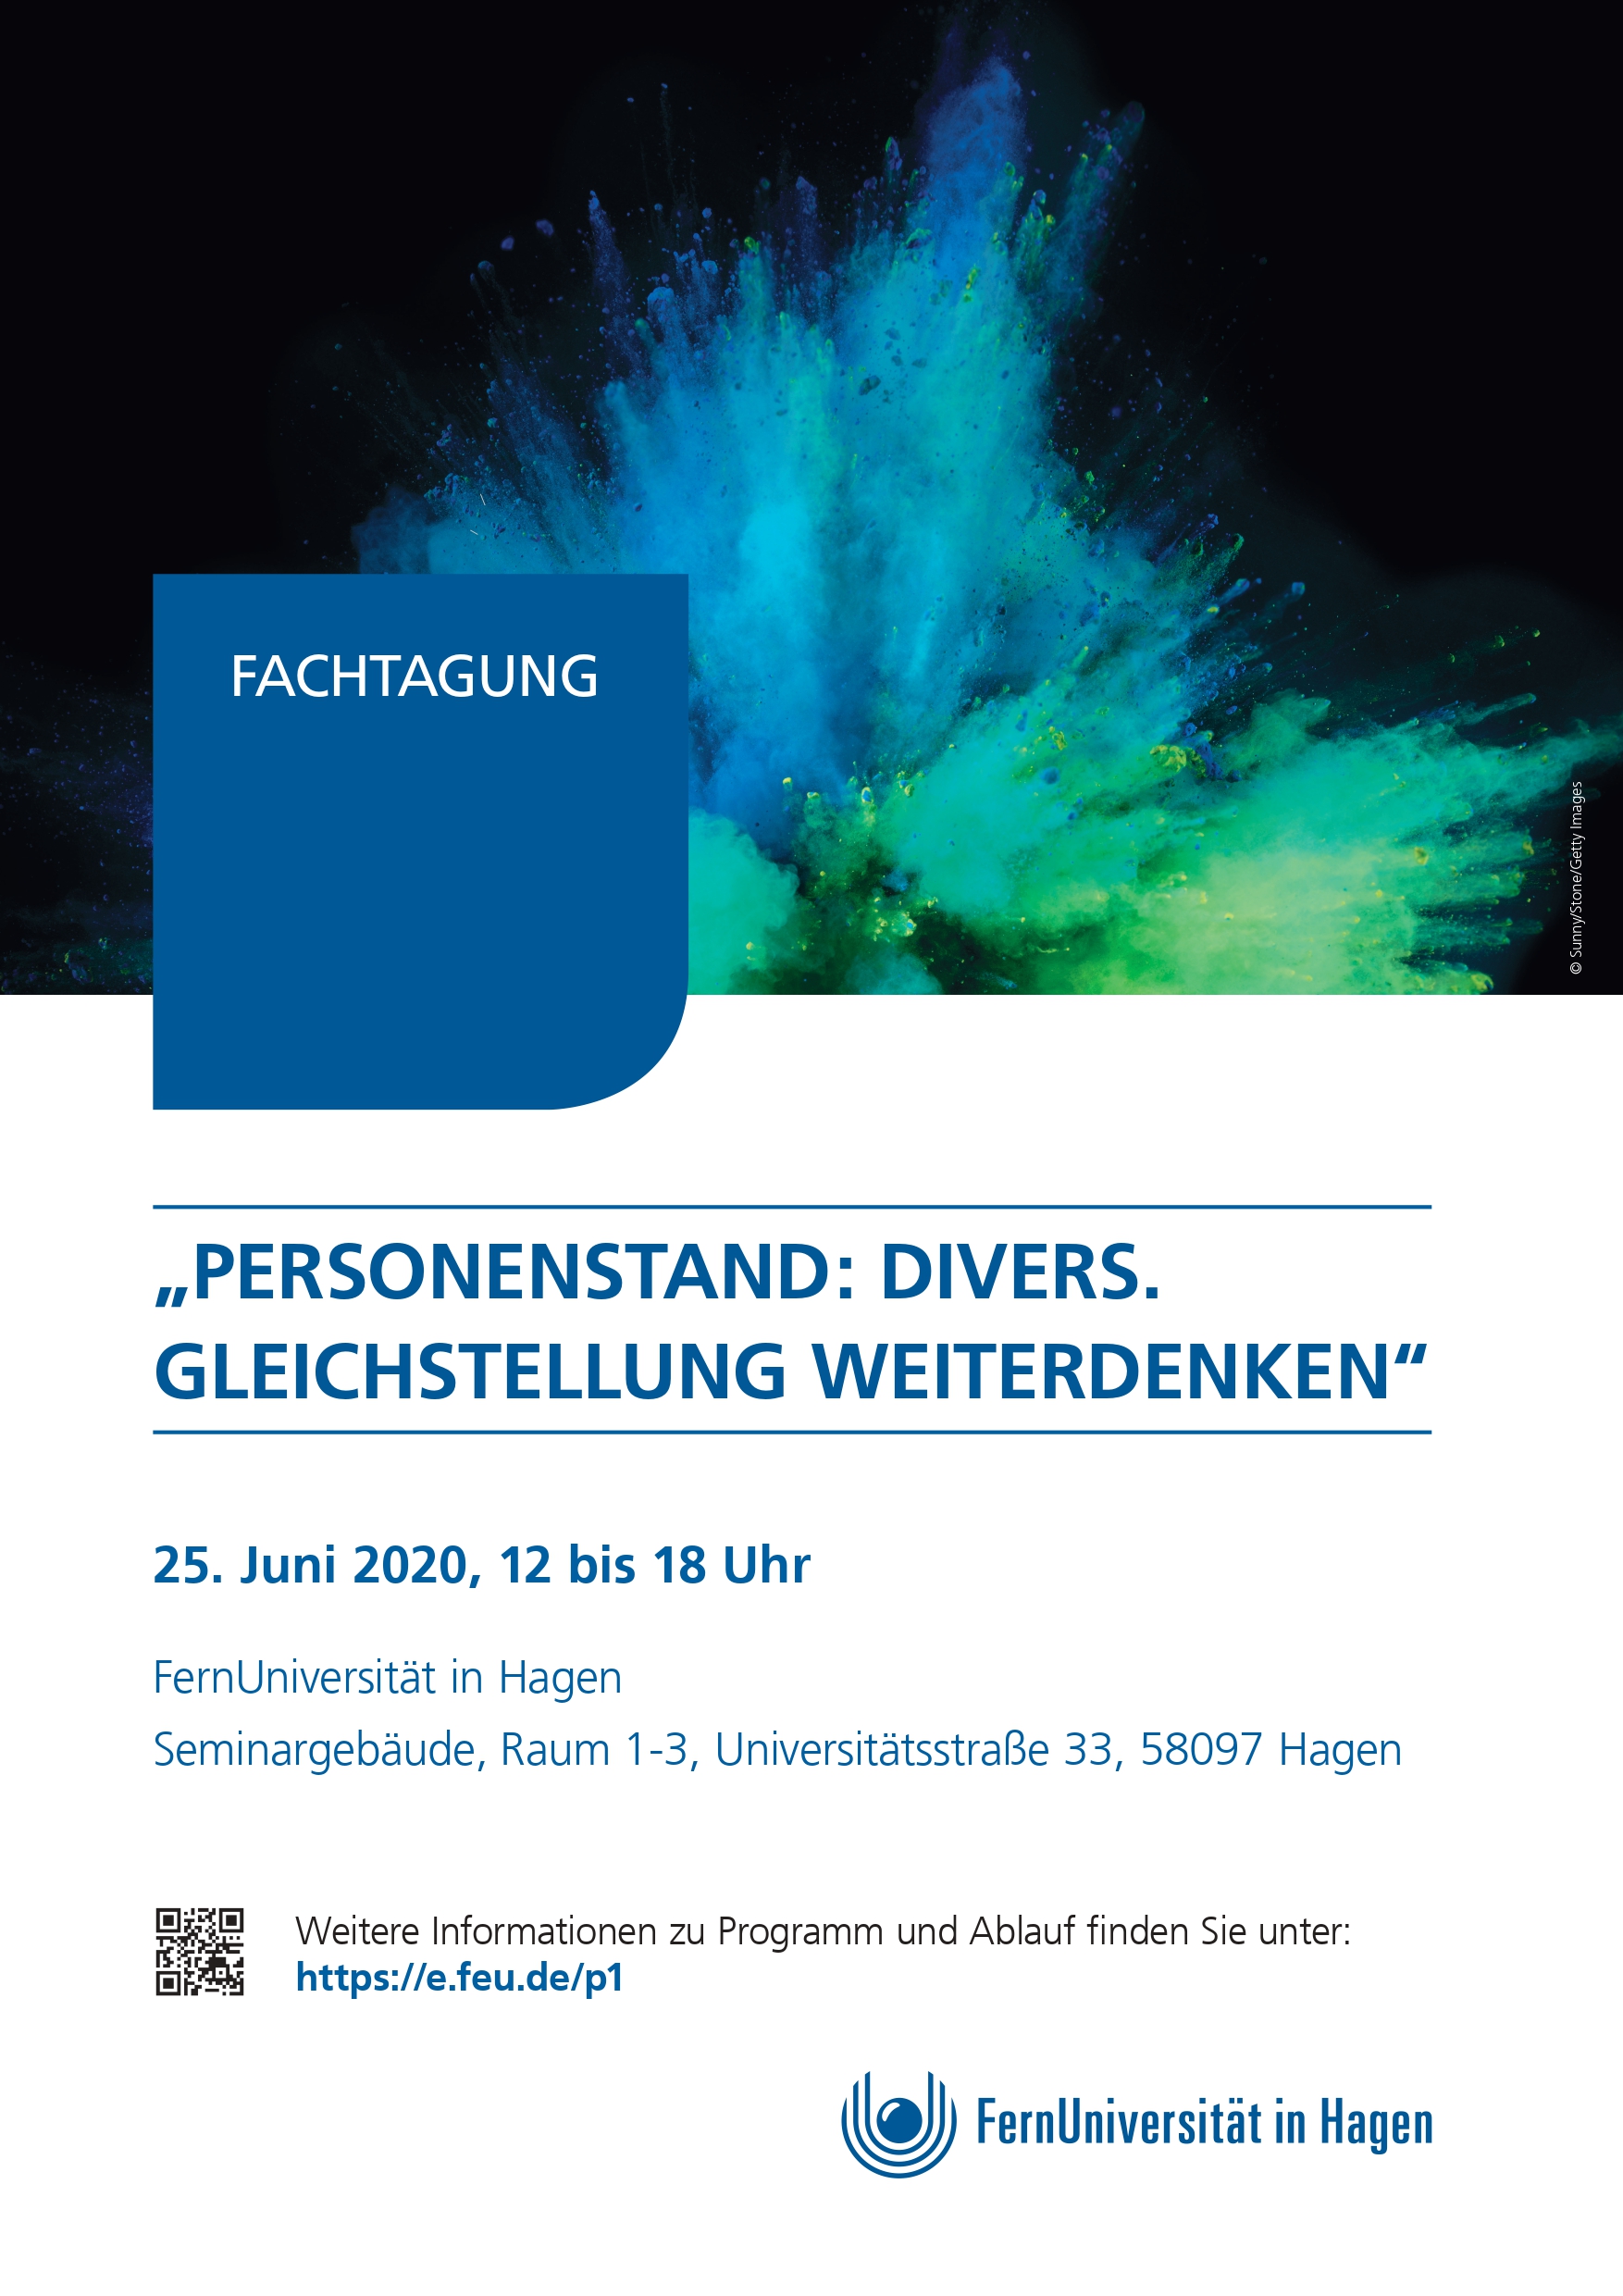 Auf dem Bild ist der Flyer der Fachtagung mit Titel, Datum und Adresse ersichtlich. Über den Informationen ist auf schwarzem Hintergrund eine blaue, grüne und gelbe Farbexplosion abgebildet.